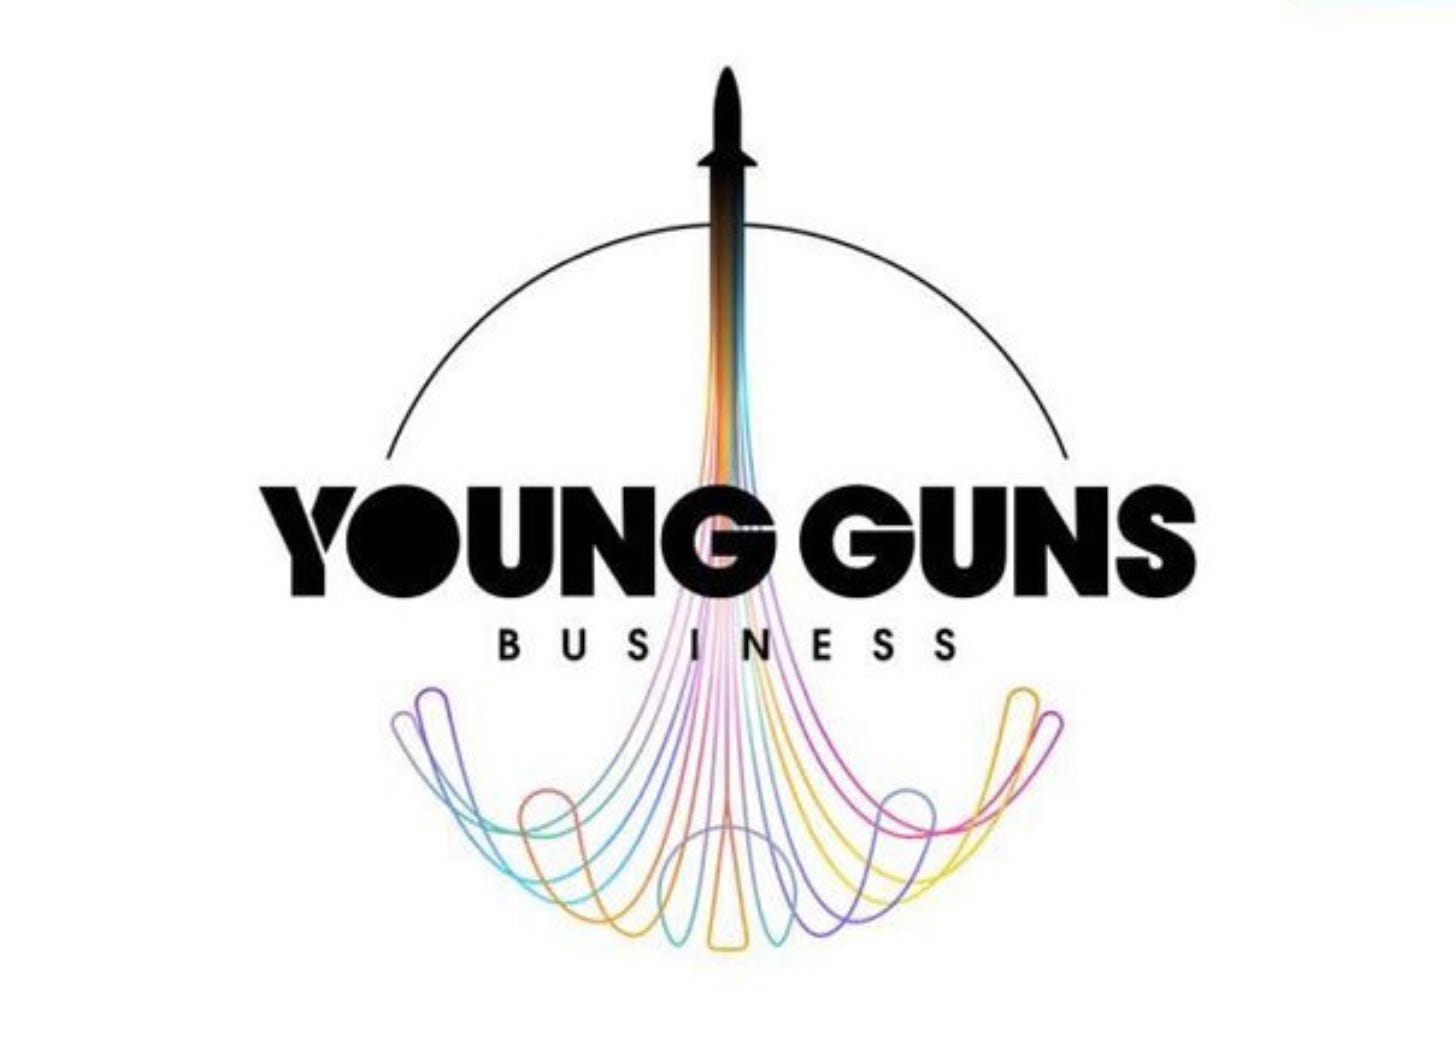 Logo do Young Guns Business em fundo branco. Ilustração de foguete decolando com diversas linhas coloridas formando o fogo/nuvem da decolagem.